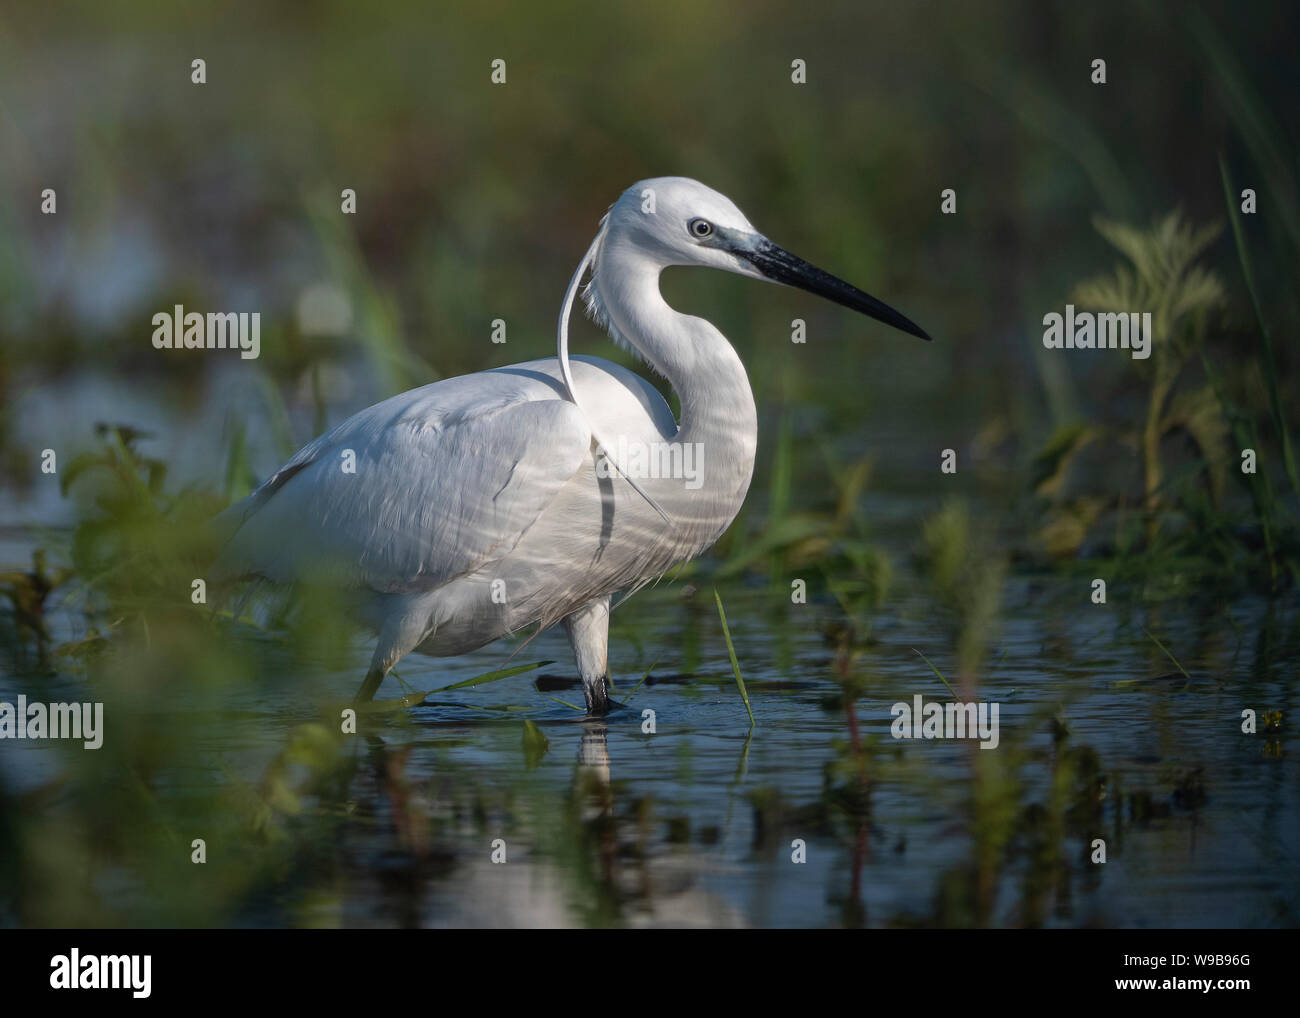 Little egret, Danube Delta, Romania Stock Photo